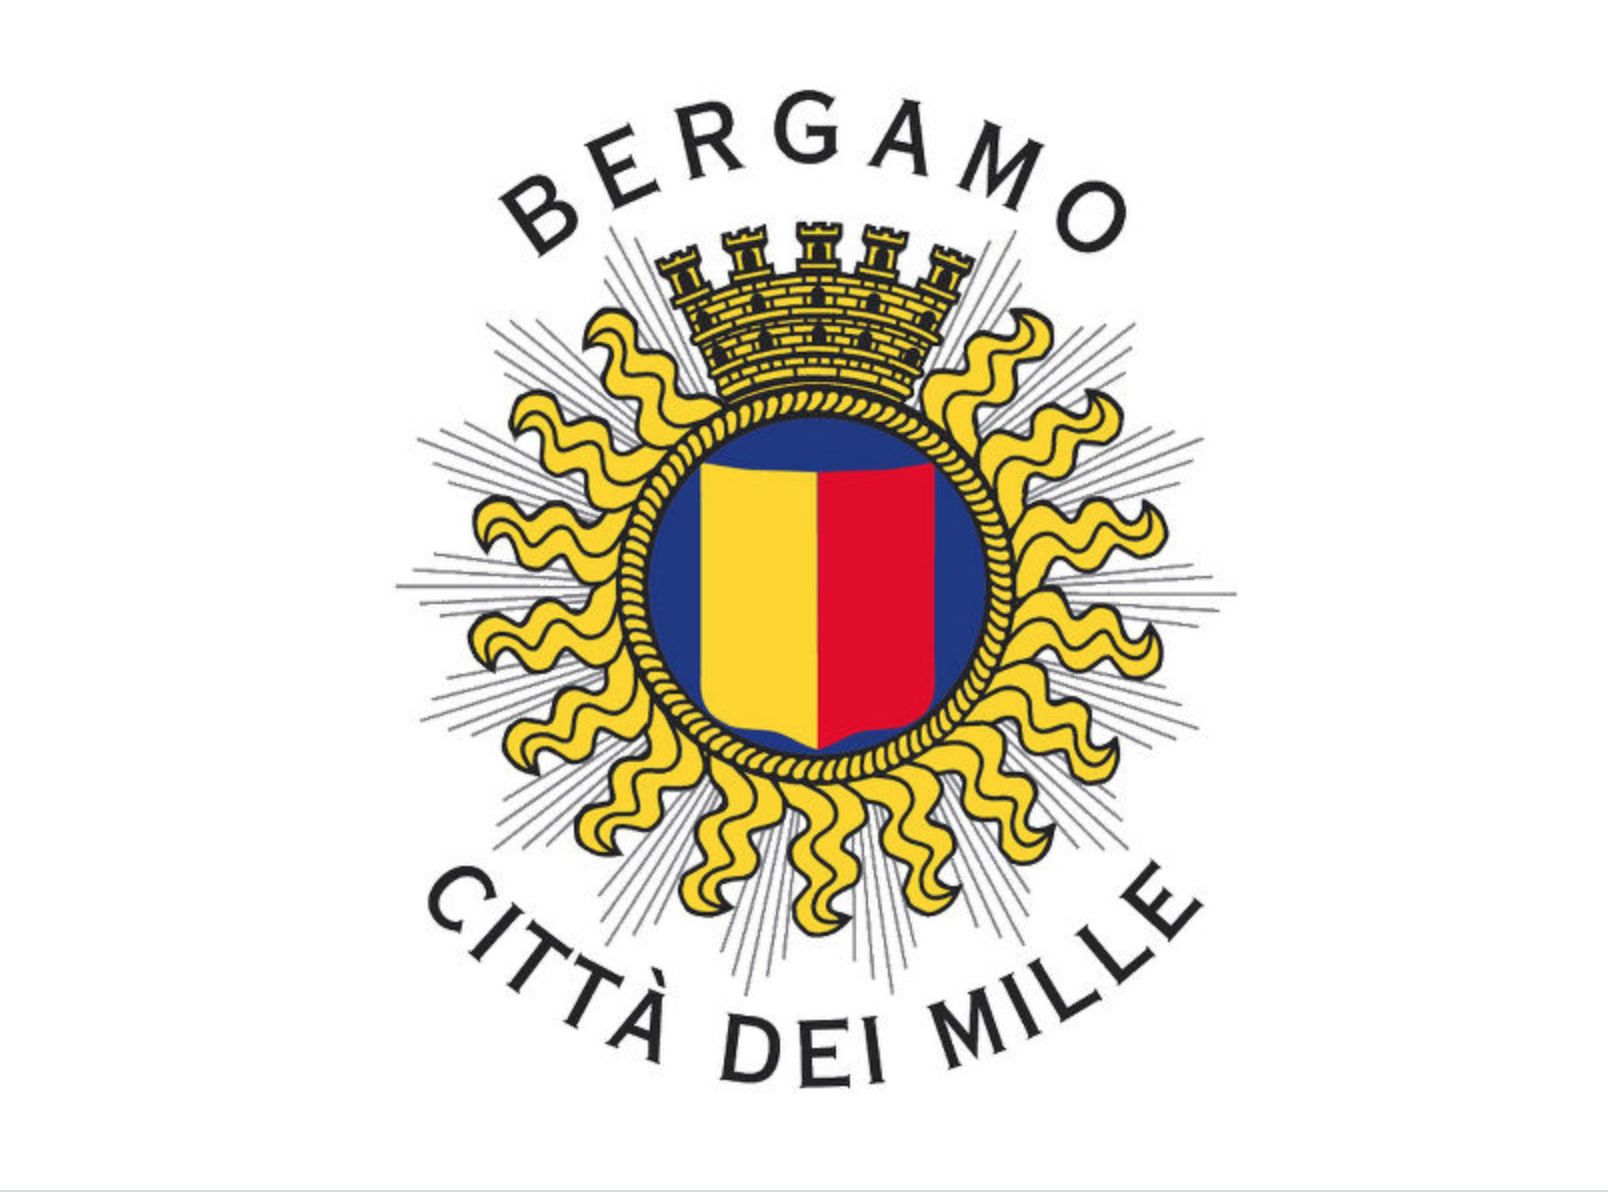 Bianchi (Lega): Le politiche pro vita e famiglia contro l'amministrazione arcobaleno di Bergamo 1